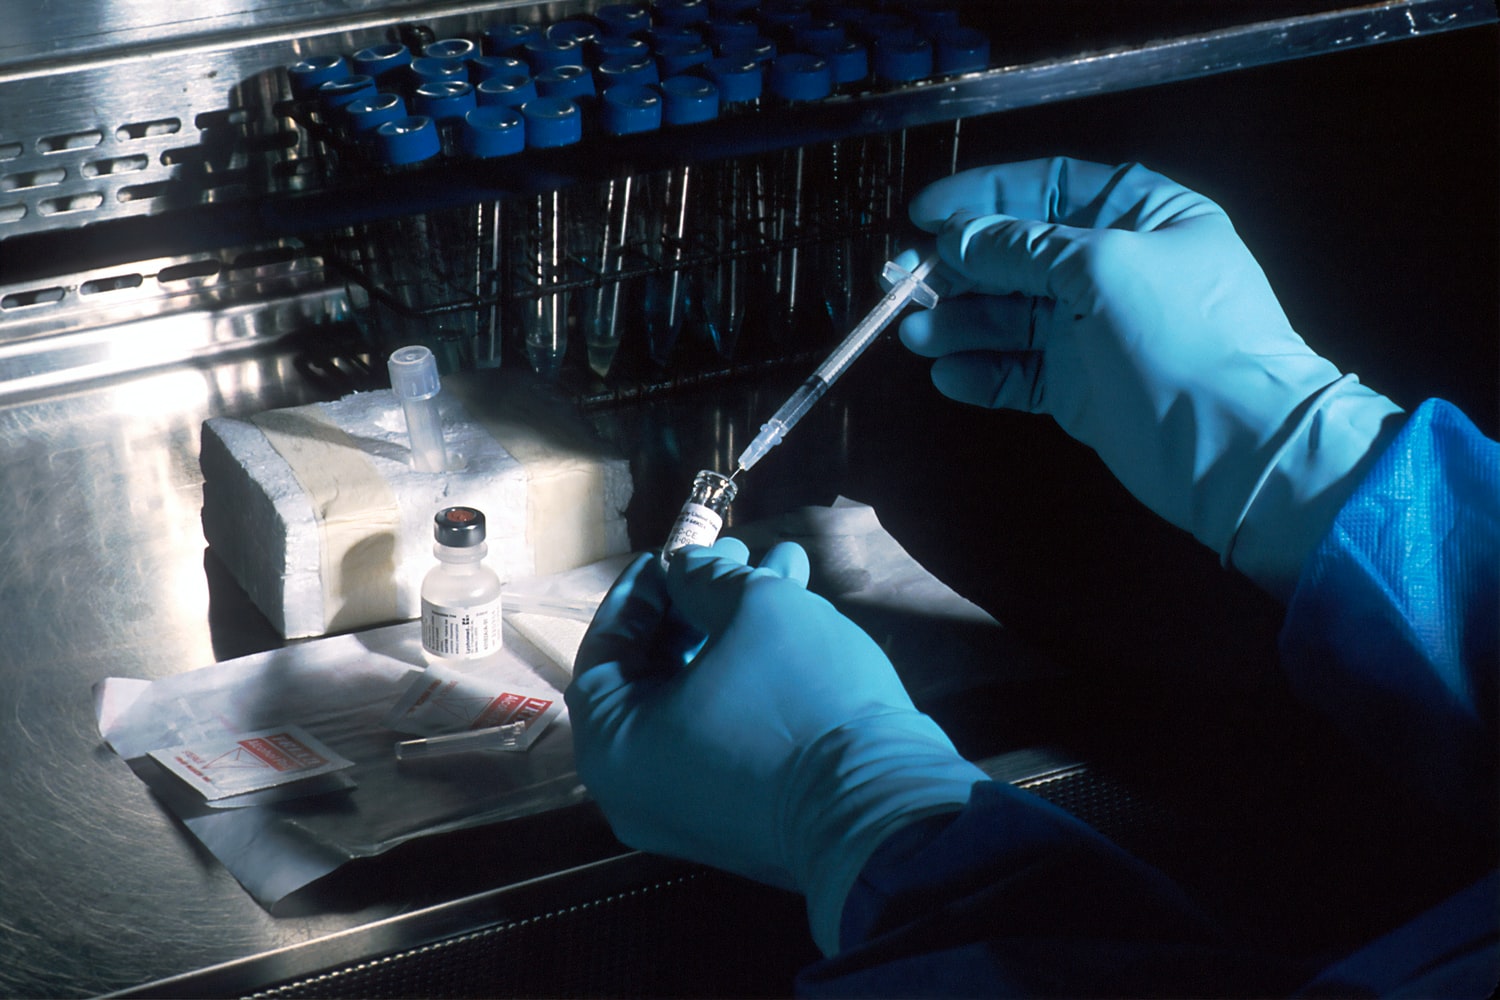 W pierwszym tygodniu laboratorium Bruss wykonało ponad 500 badań na koronawirusa. Skraca się czas oczekiwania na wyniki